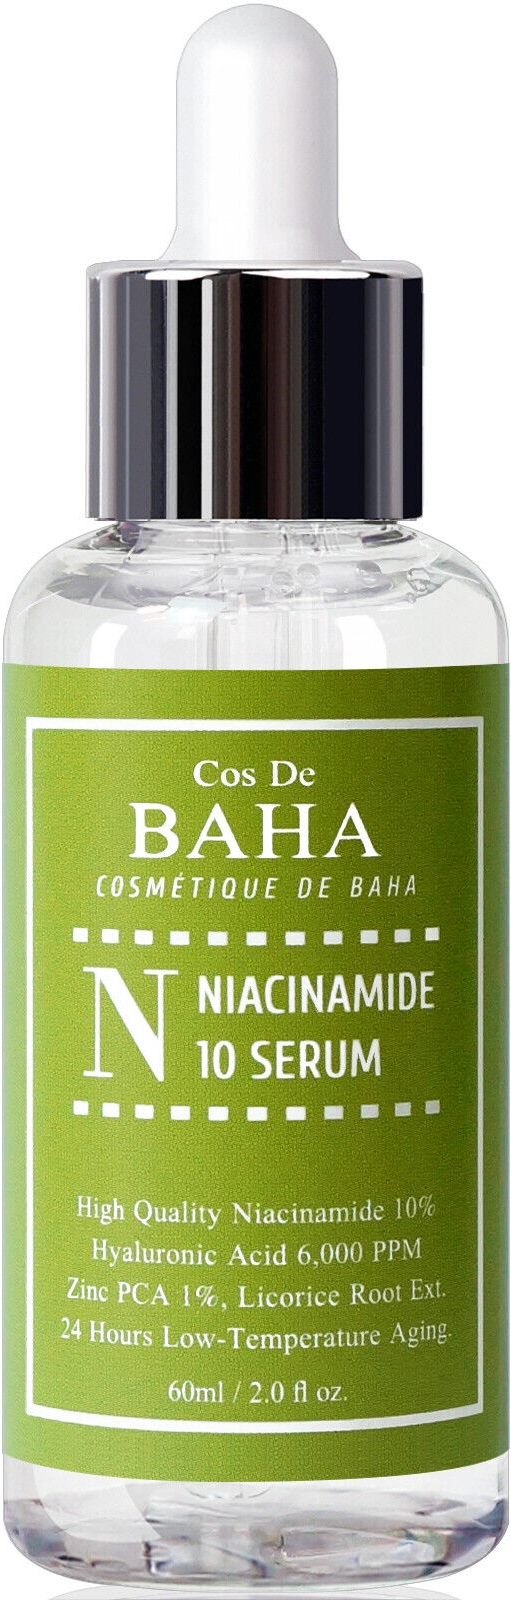 Сыворотка для жирной и проблемной кожи с ниацинамидом 10% и цинком 1% - Cos De Baha N Niacinamide 10 Serum with Zinc, 60 мл - фото N1